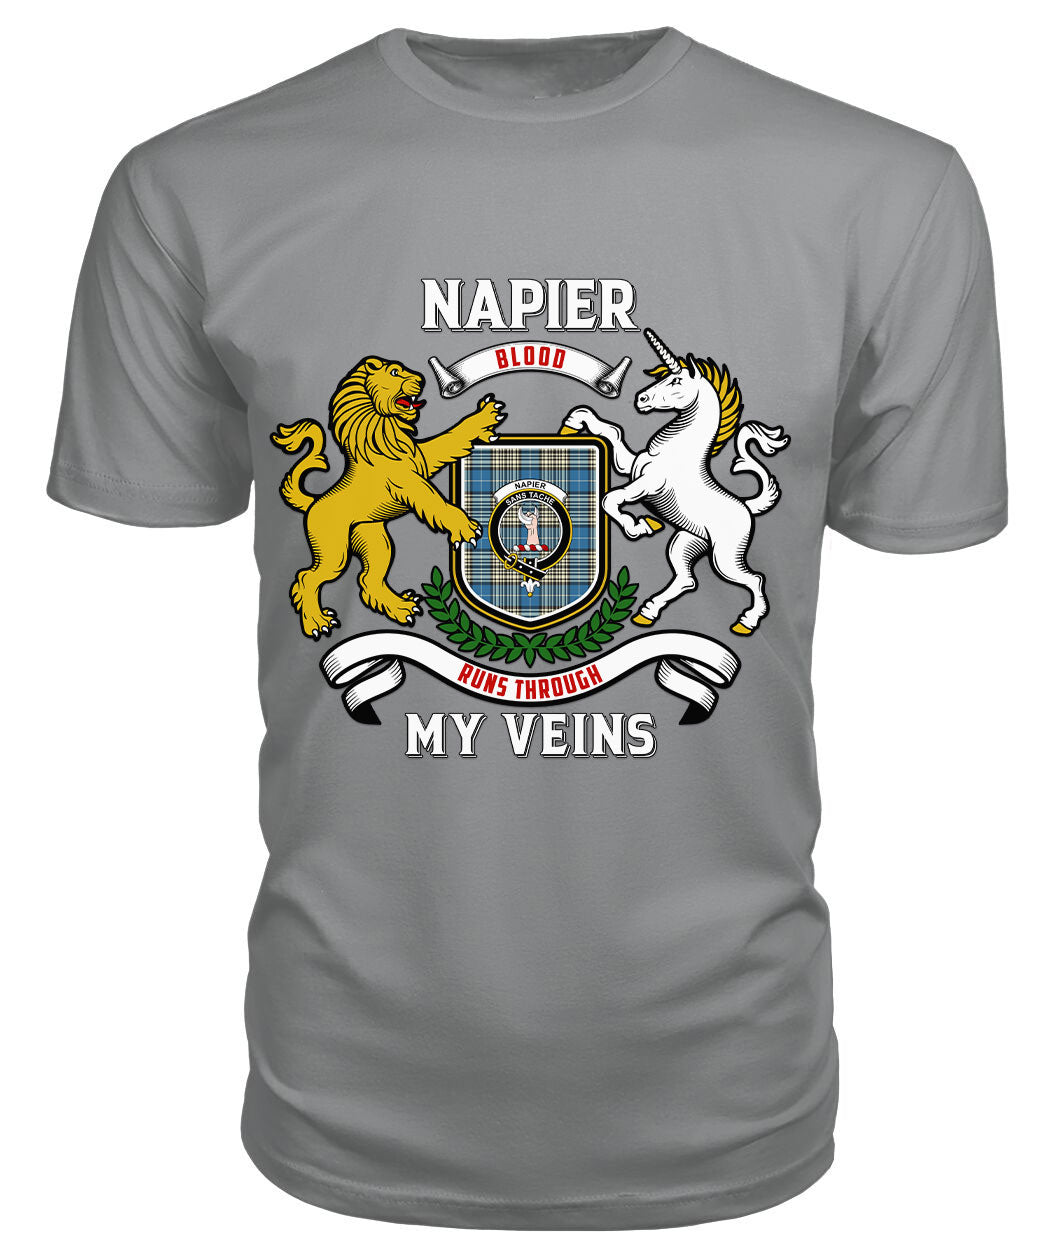 Napier Ancient Tartan Crest 2D T-shirt - Blood Runs Through My Veins Style